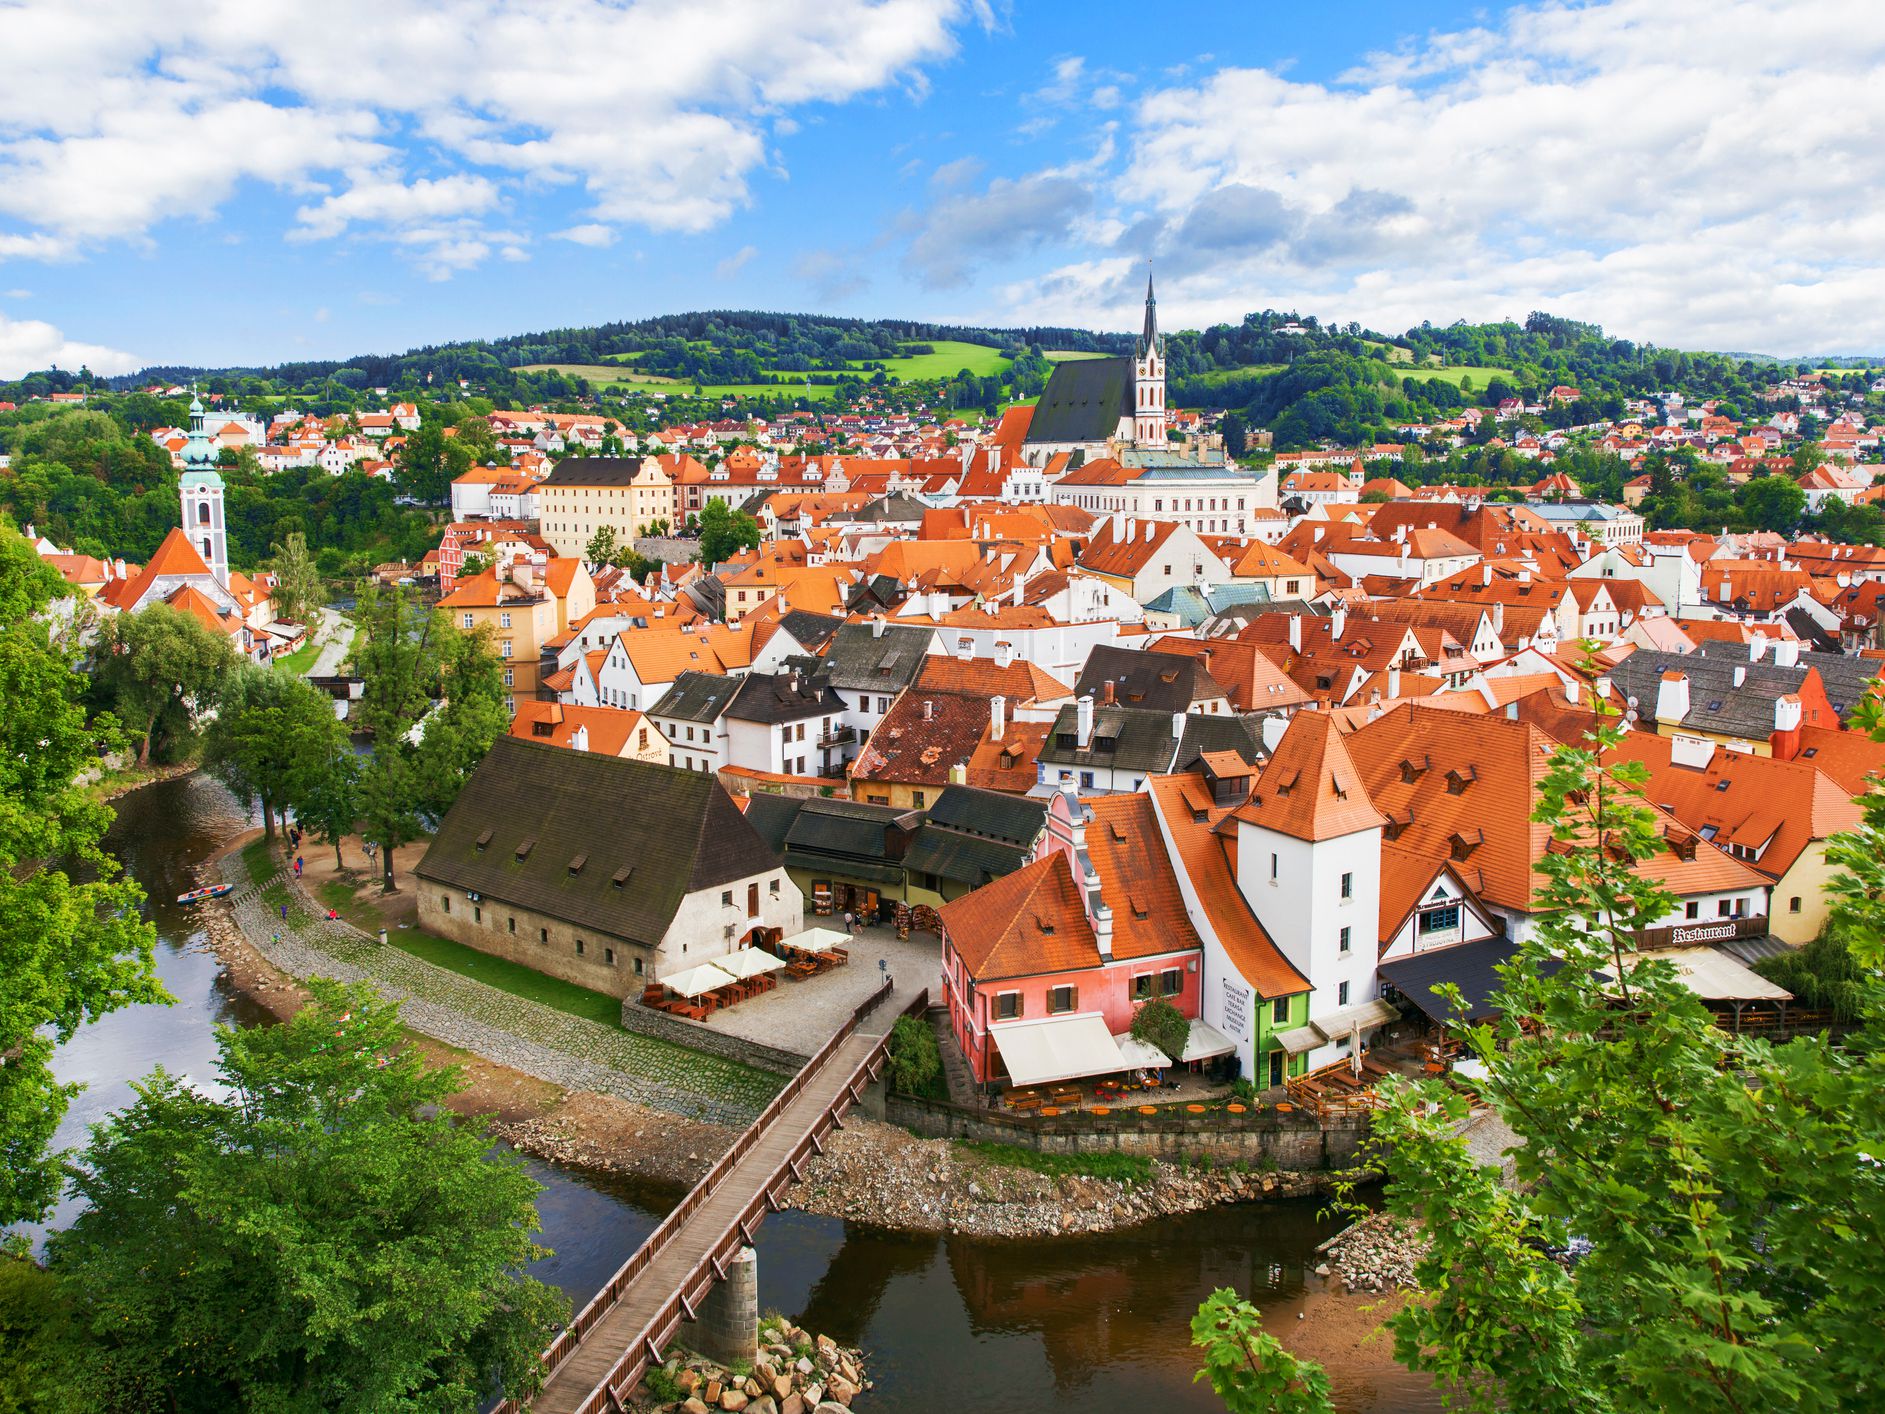 Călătoriile în scop turistic sunt interzise în Cehia